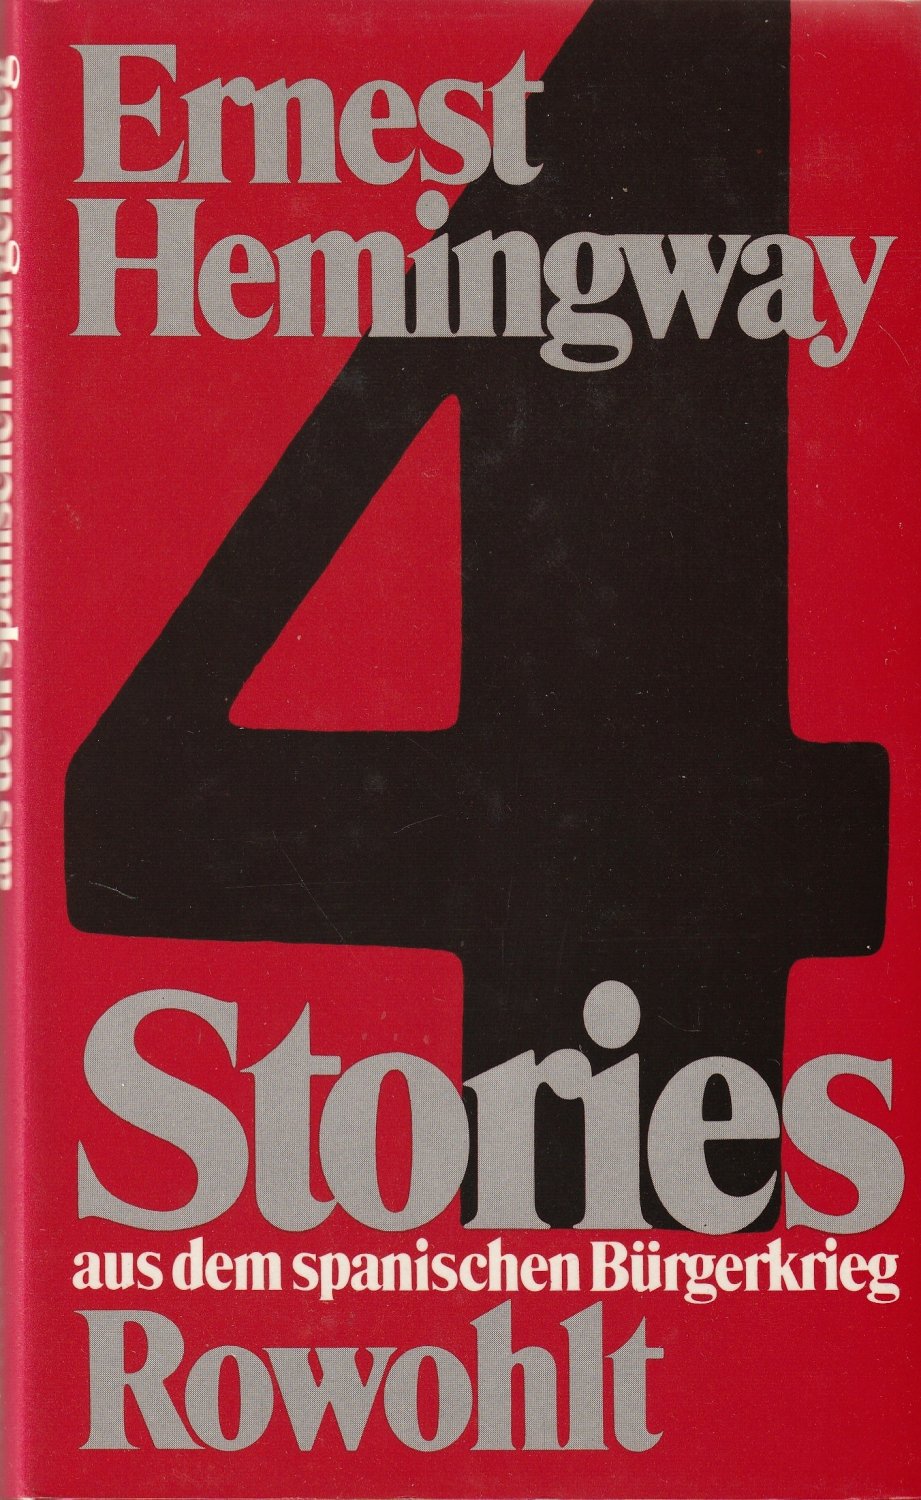 Vier Stories aus dem spanischen Bürgerkrieg. Deutsch von Richard K. Flesch und Harry Rowohlt.  1. Auflage. - Hemingway, Ernest